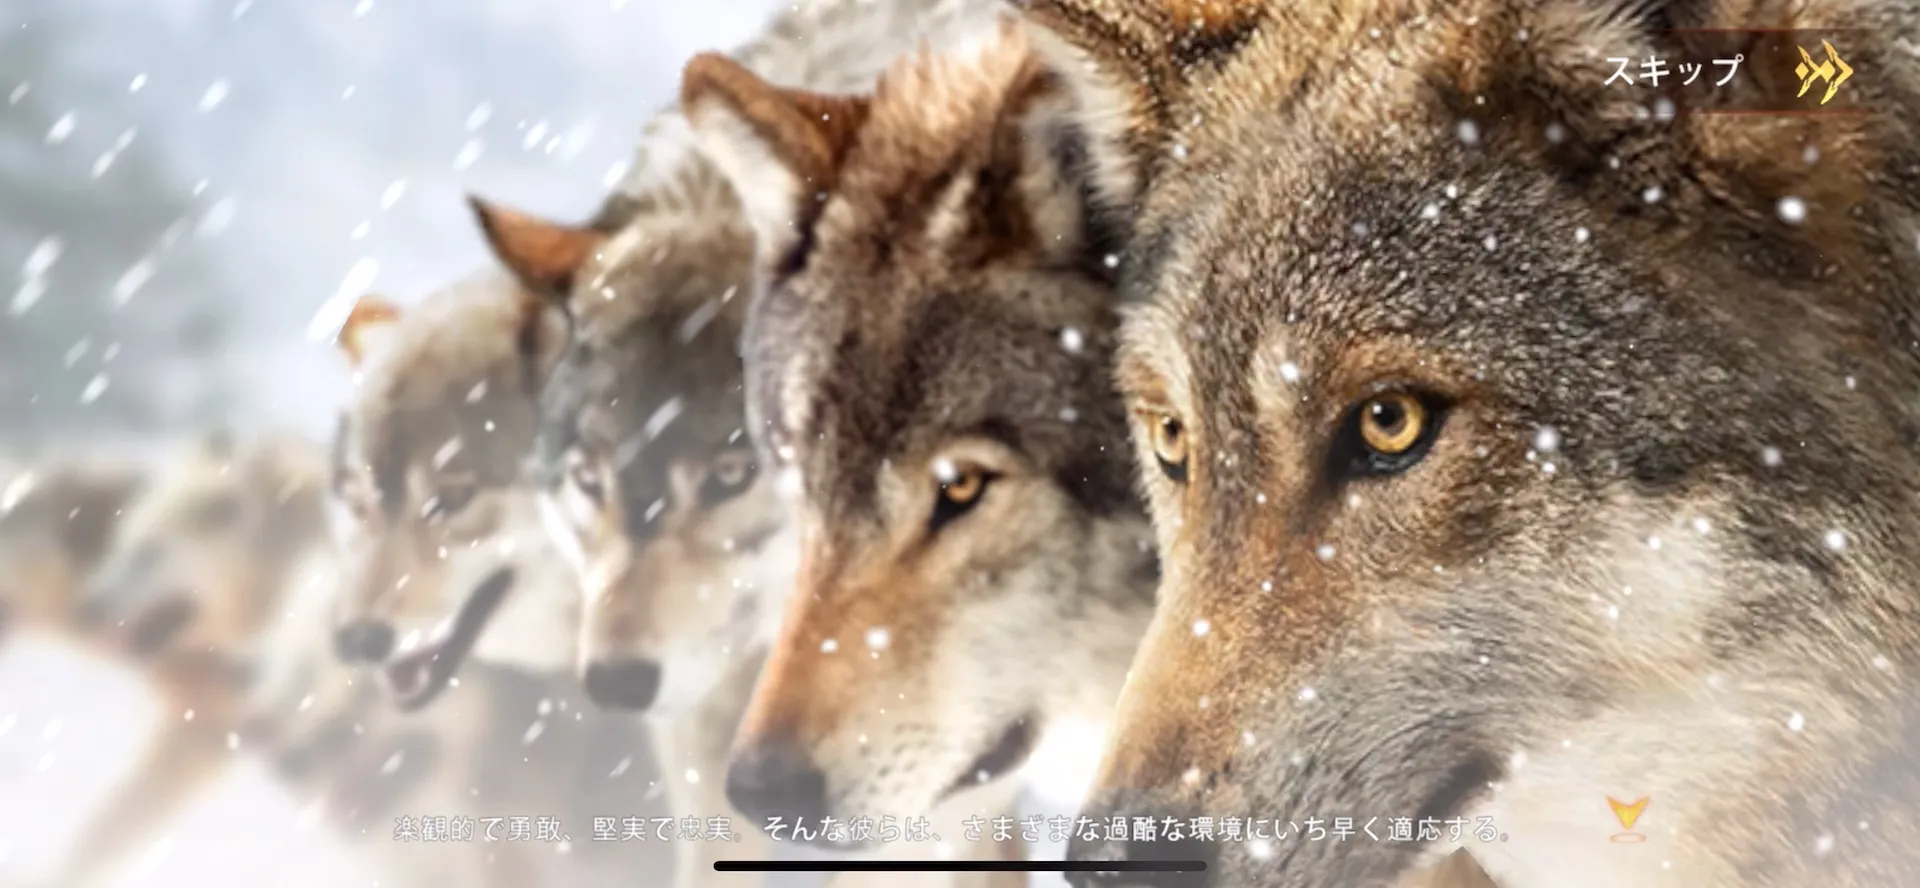 活躍する霊長類はサル。あくまで「狼」を主役にした斬新なゲーム